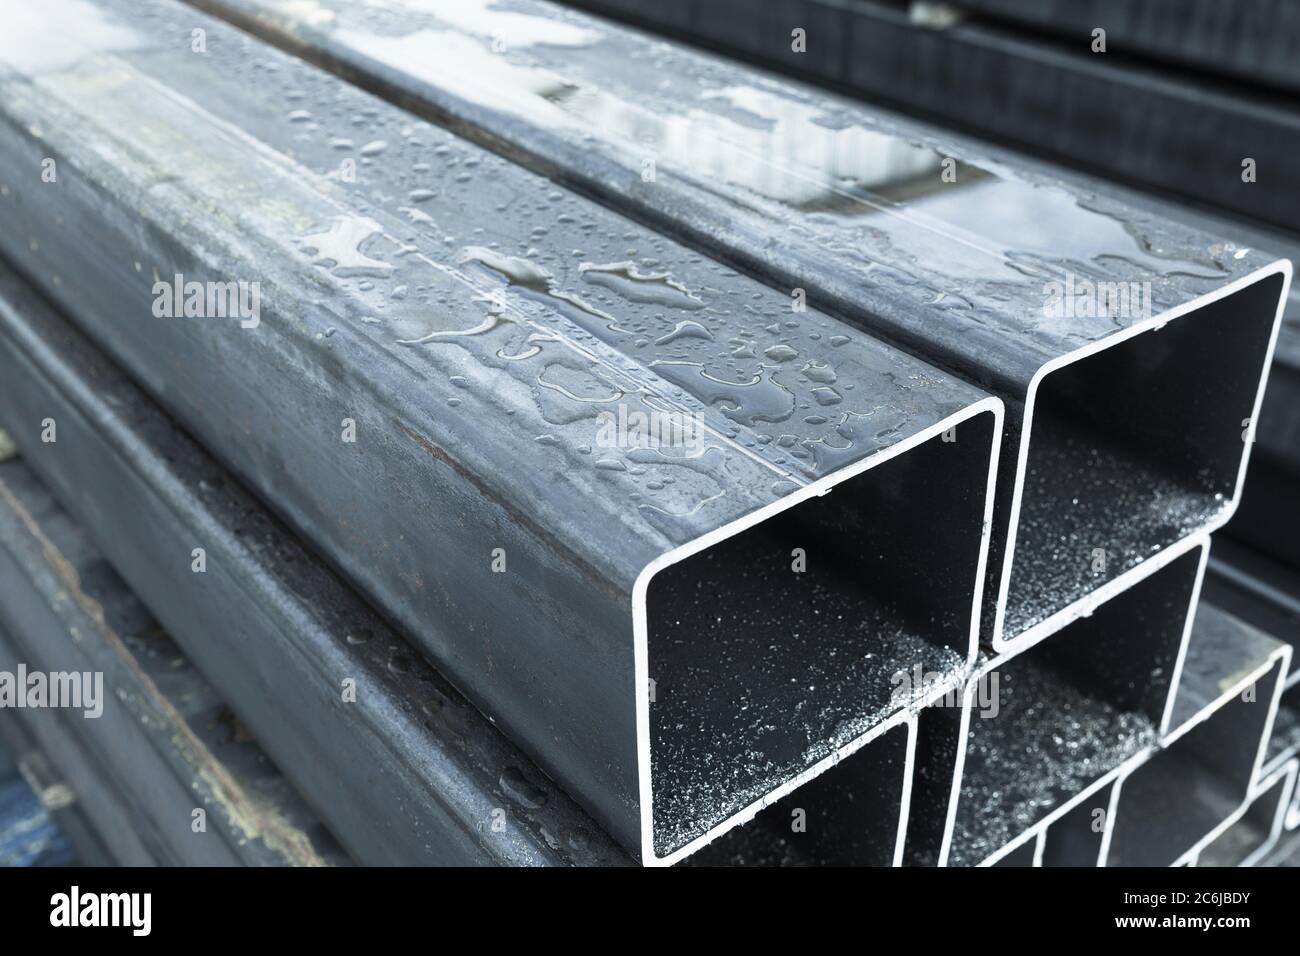 Stapel von gewalzten Metallprodukten, nassen Stahlrohren mit rechteckigem Querschnitt, Nahaufnahme mit selektivem Fokus Stockfoto